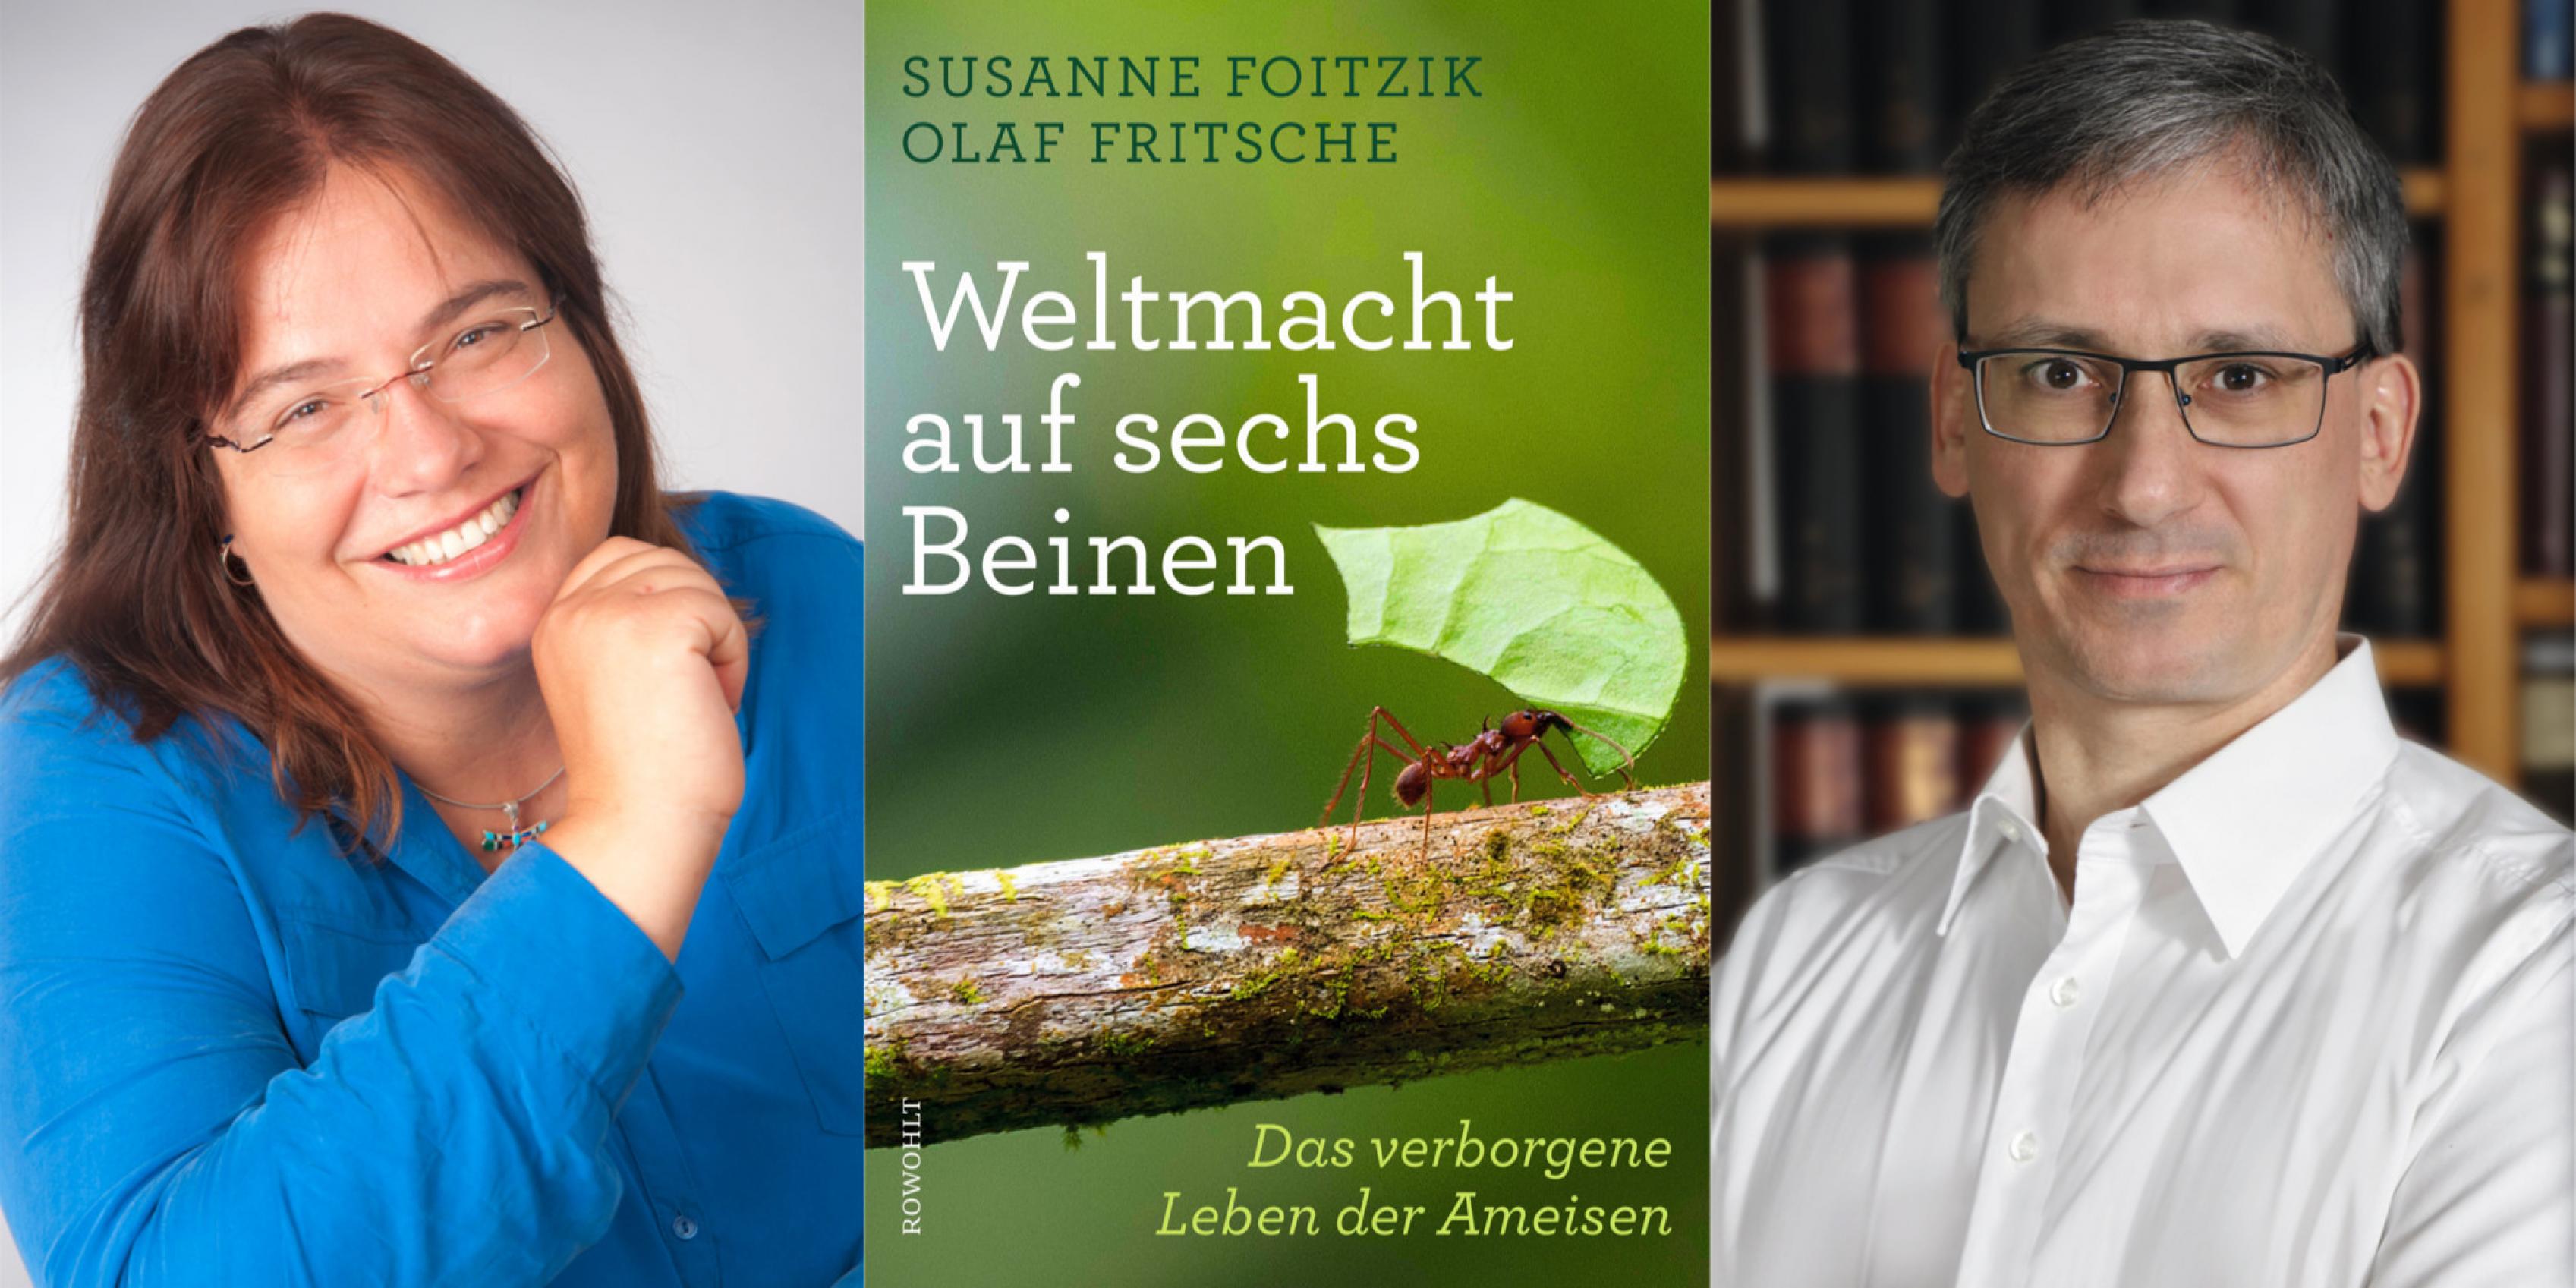 Das Autorenteam Susanne Foitzik und Olaf Fritsche und das Cover von „Weltmacht auf sechs Beinen“.